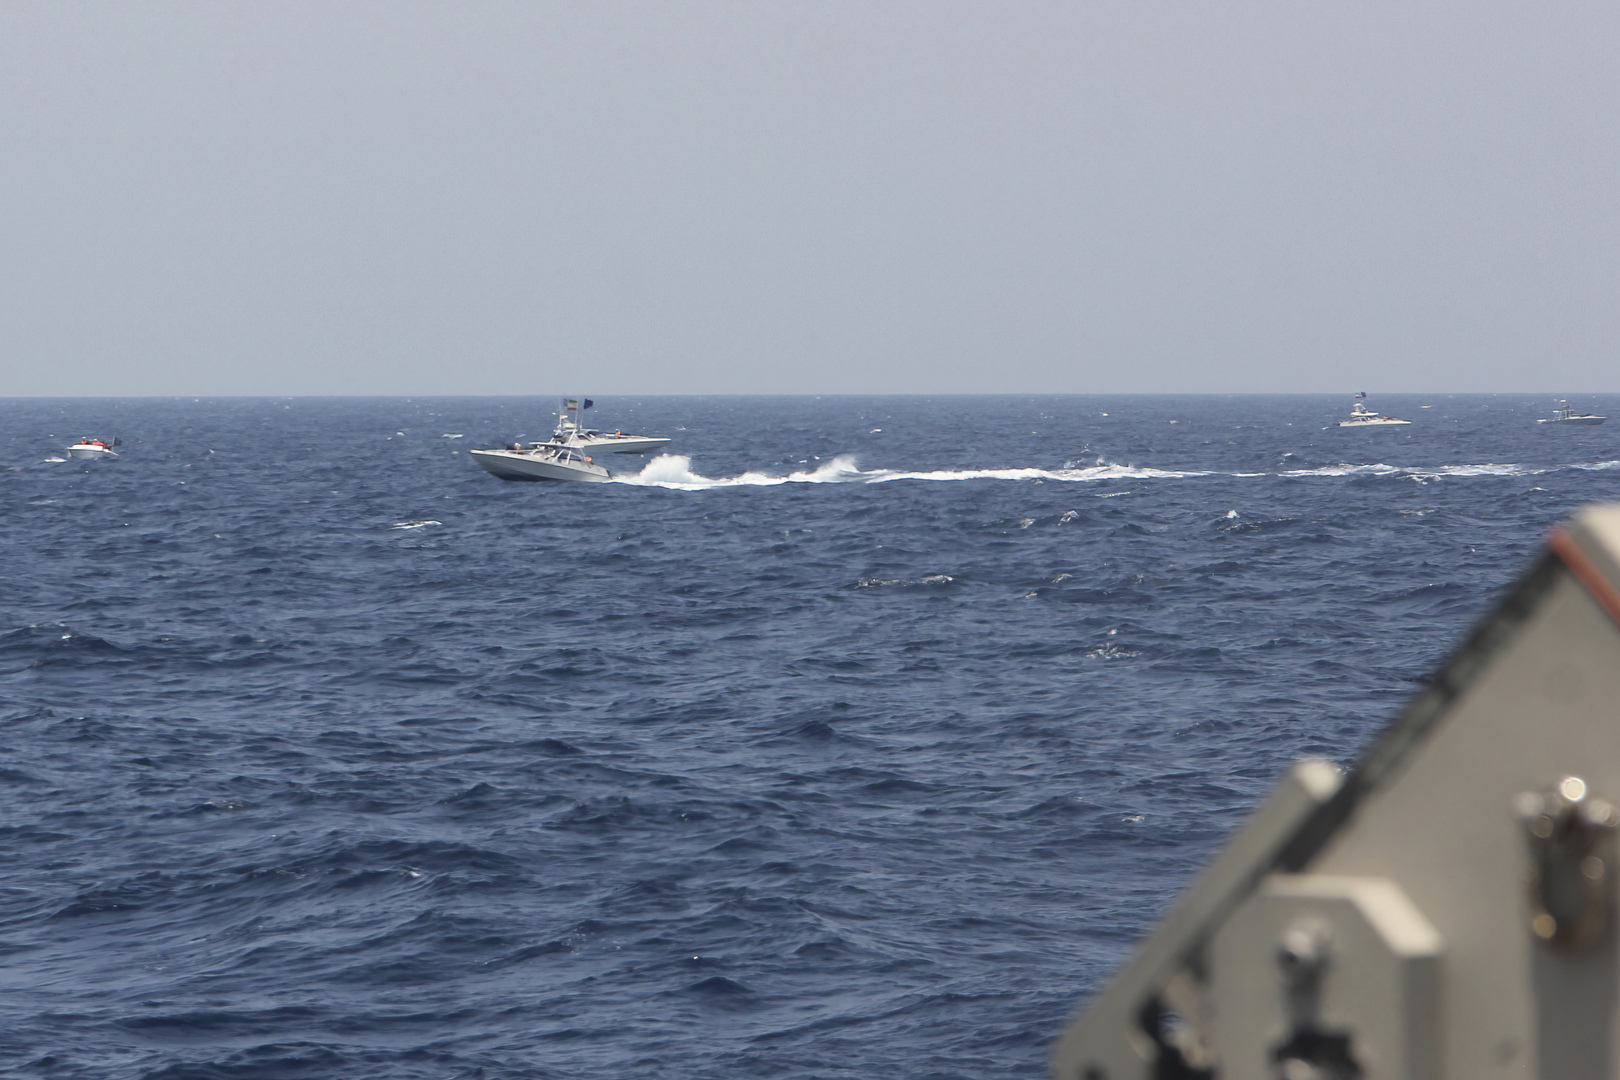 الحرس الثوري الإيراني يعلن احتجاز سفينة أجنبية في الخليج